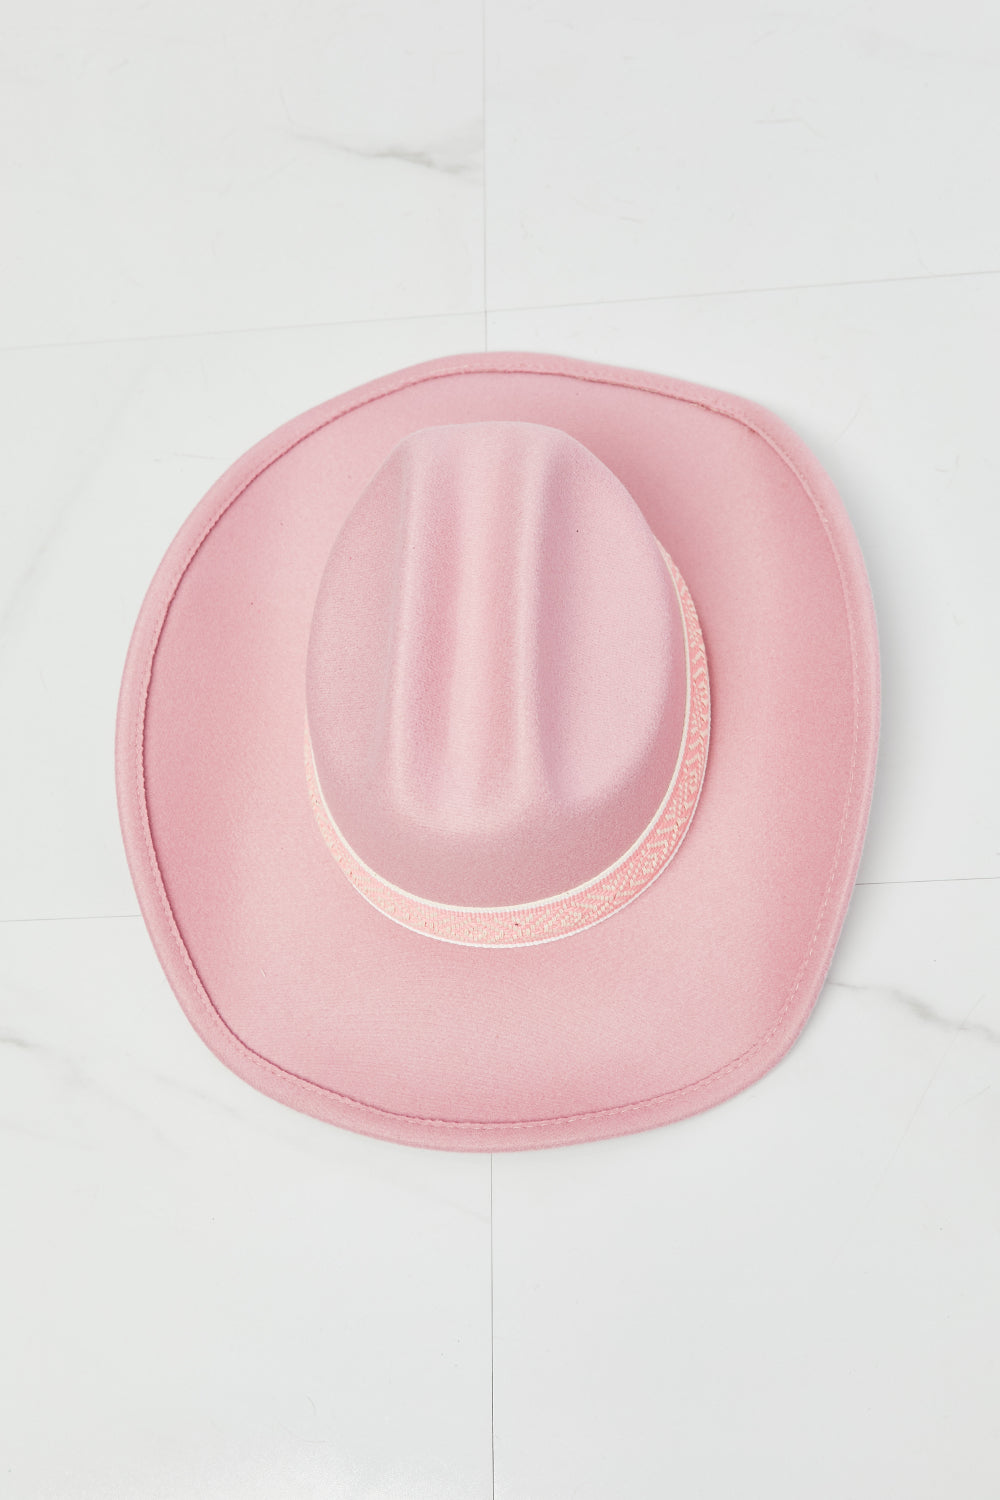 Fame Western Cutie Cowboy Hat in Pink - AllIn Computer